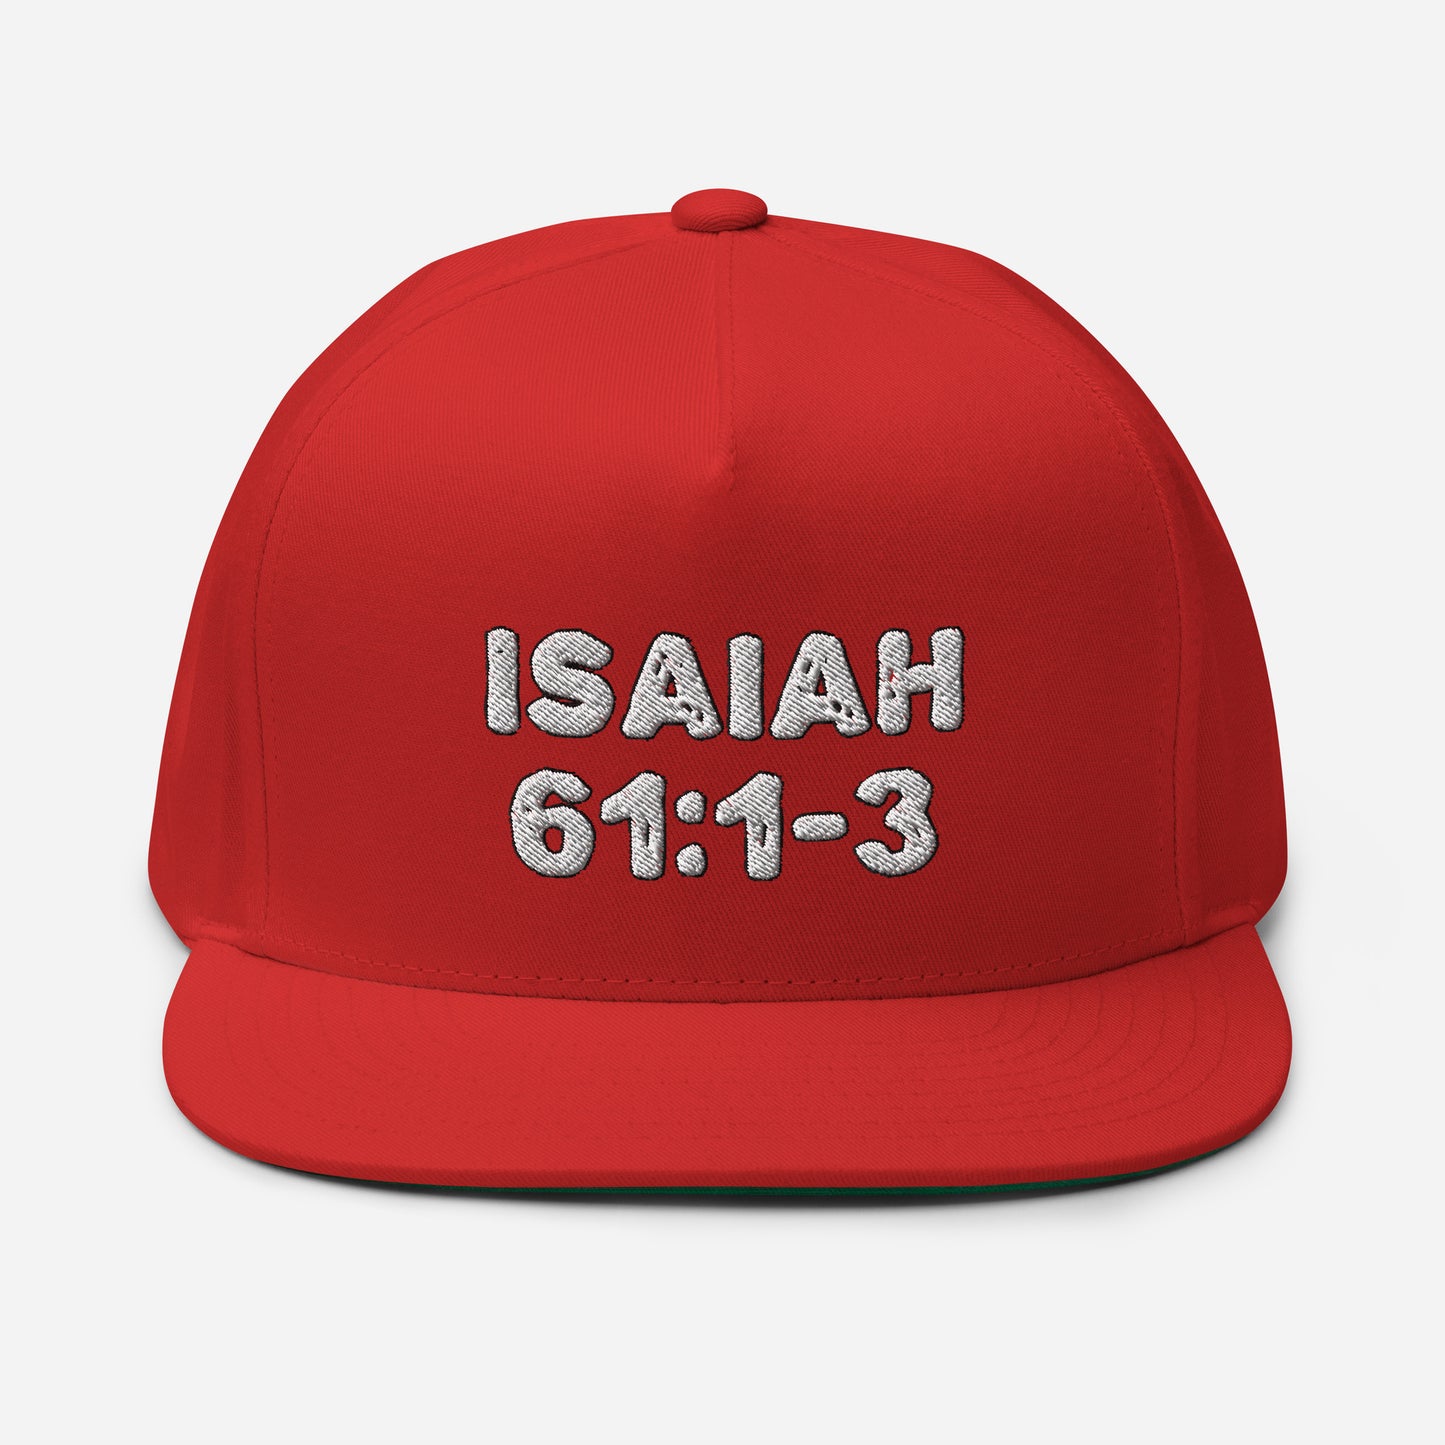 Isaiah 61:1-3 Flat Bill Cap